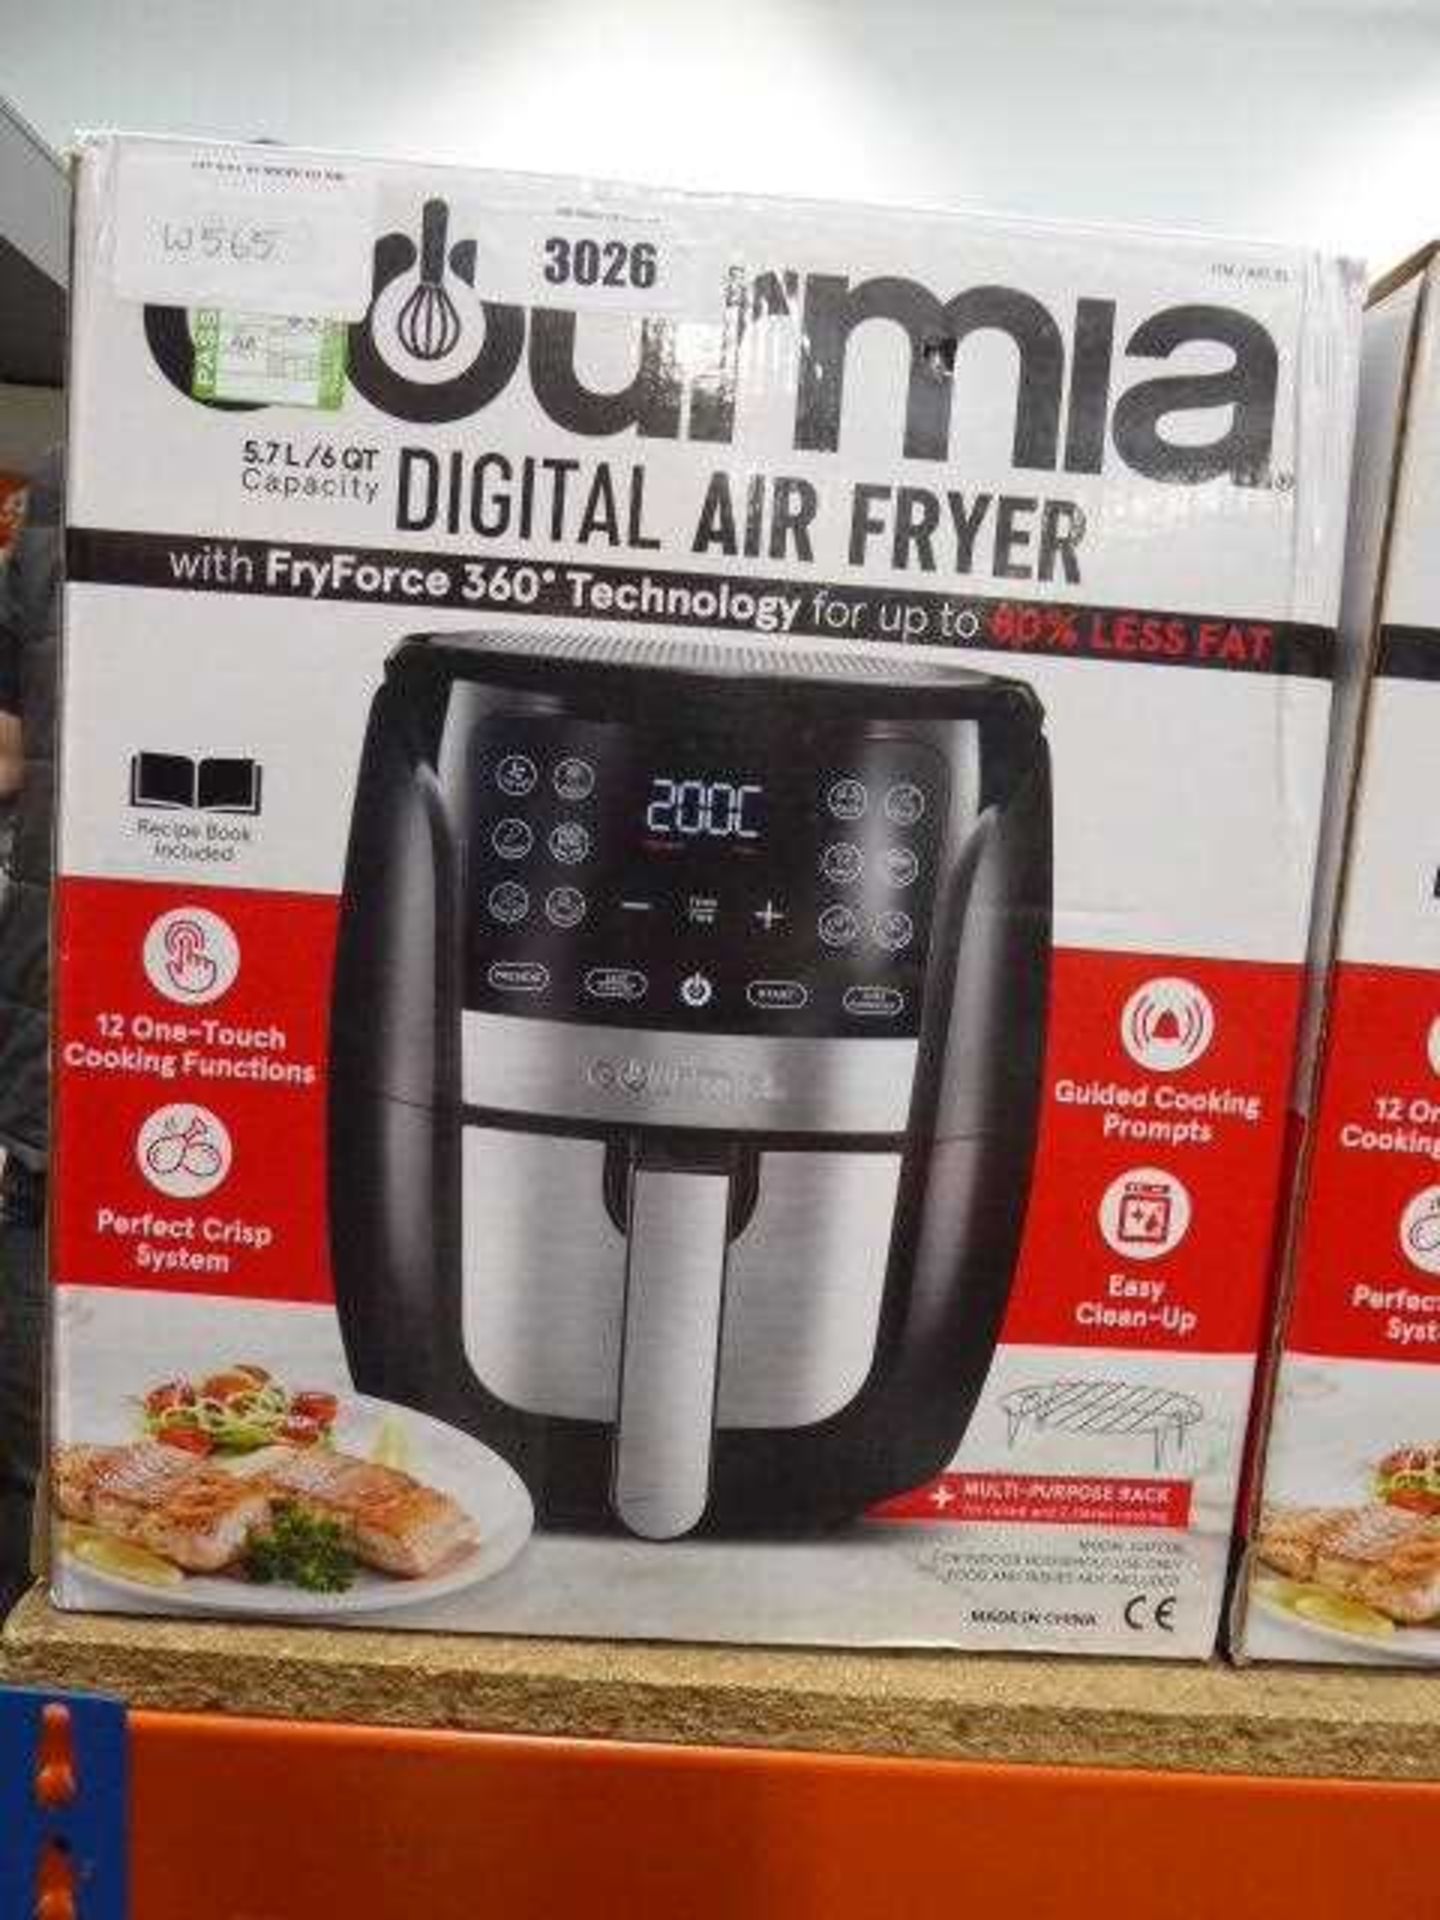 Gourmia digital air fryer 5.7L, boxed